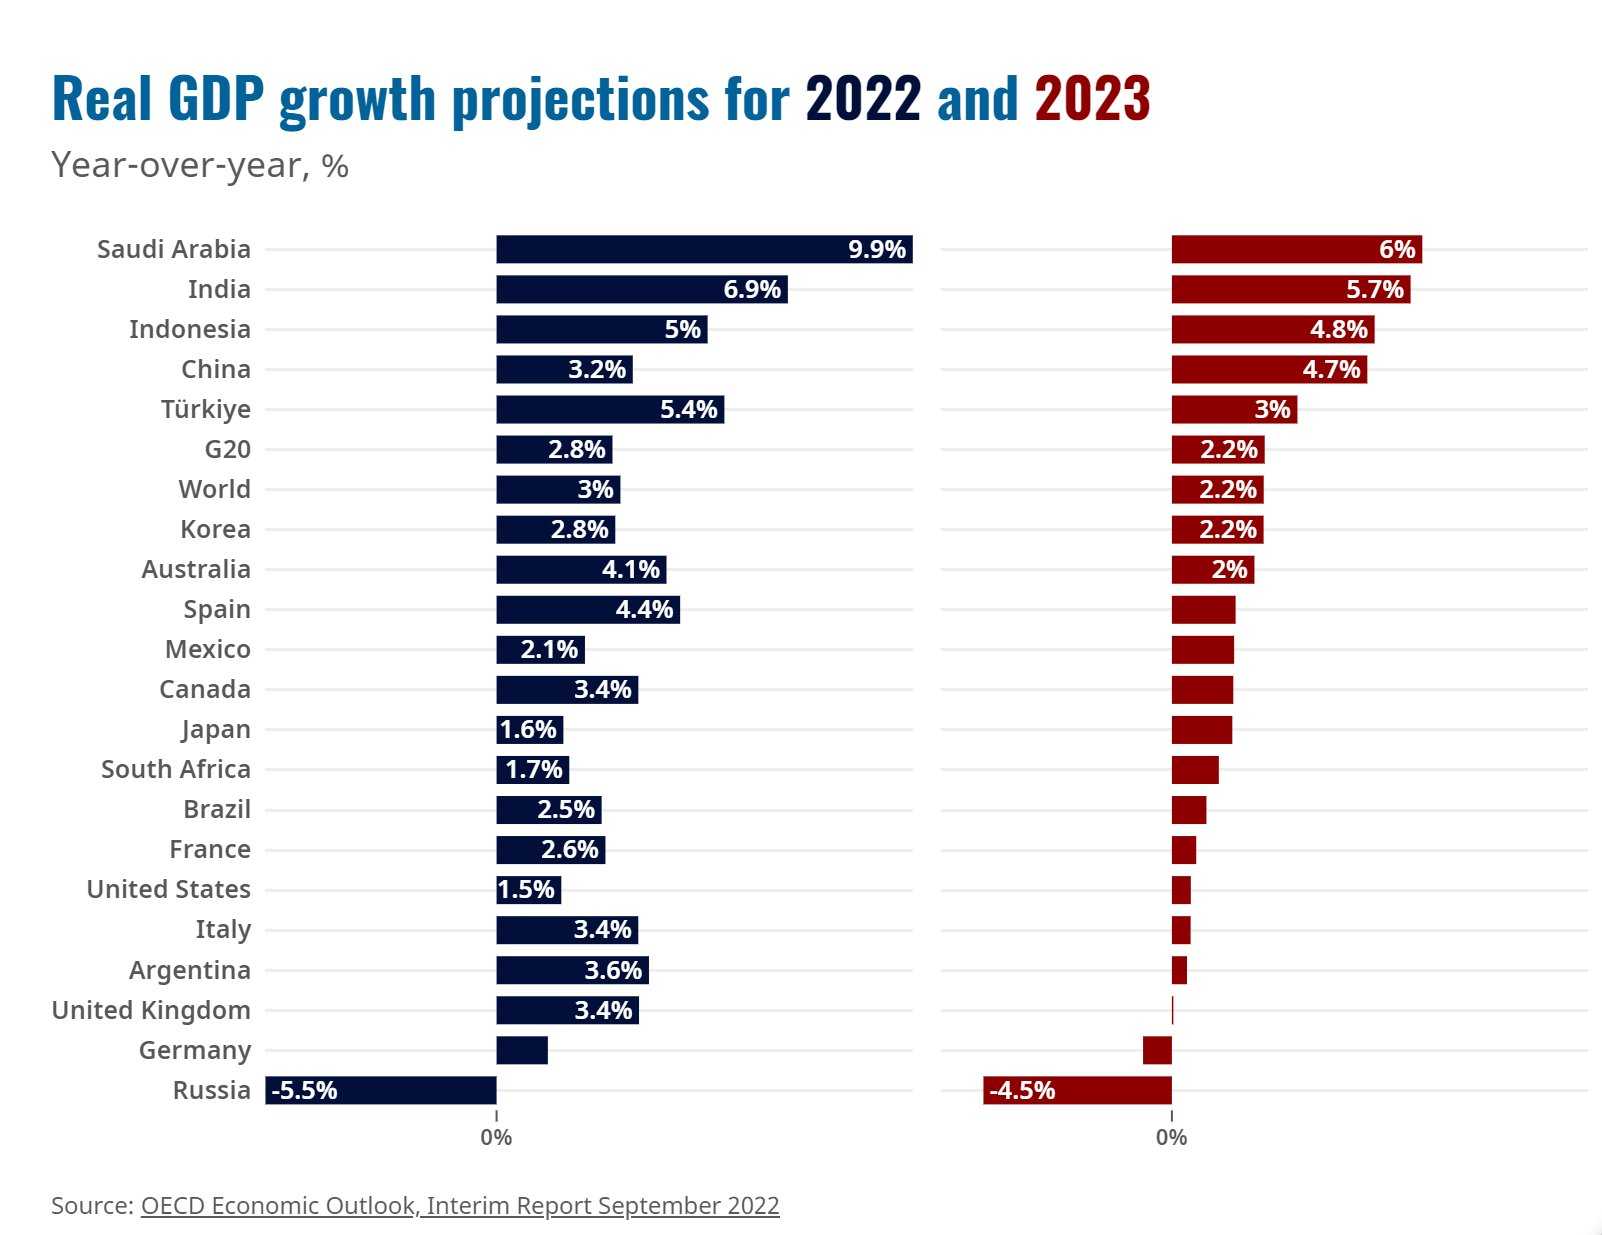 ВВП по странам. Мировой валовый продукт по странам. Экономика стран 2022